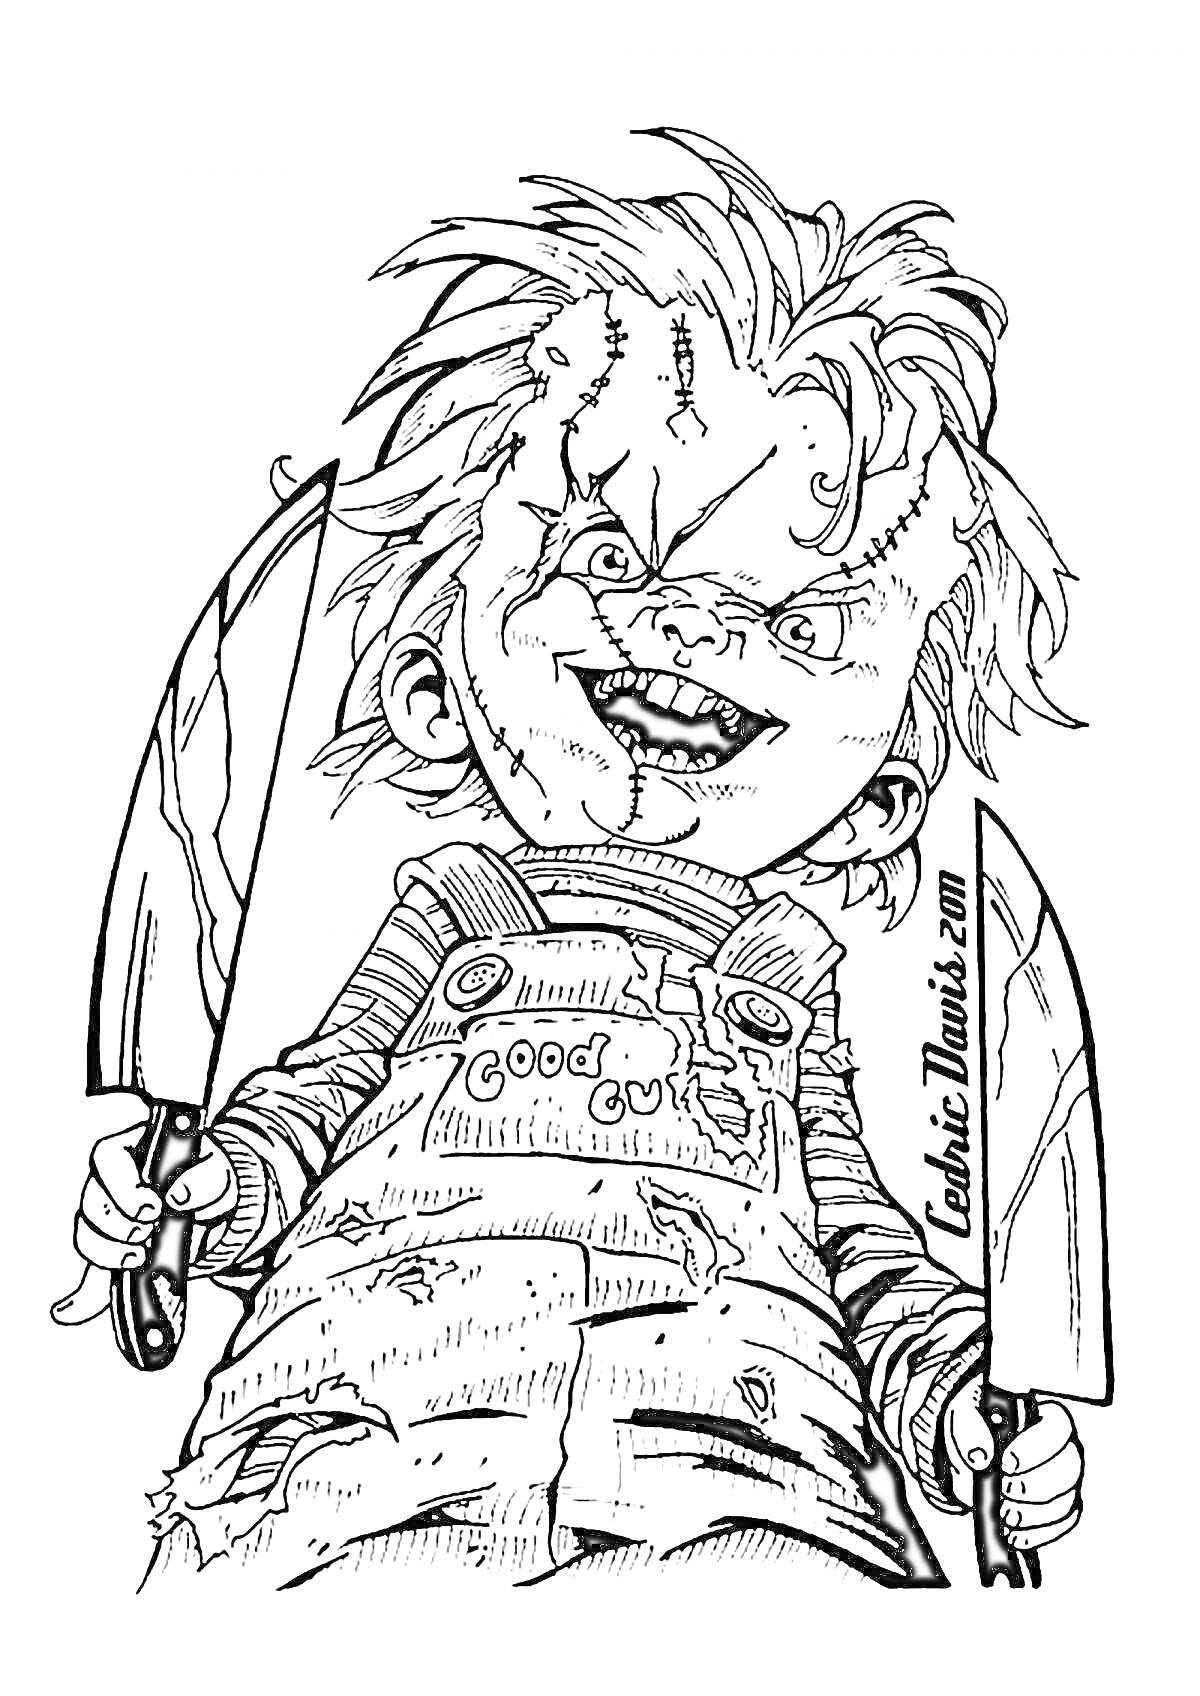 Детская кукла с ножами в руках, с изуродованным лицом и растрепанными волосами